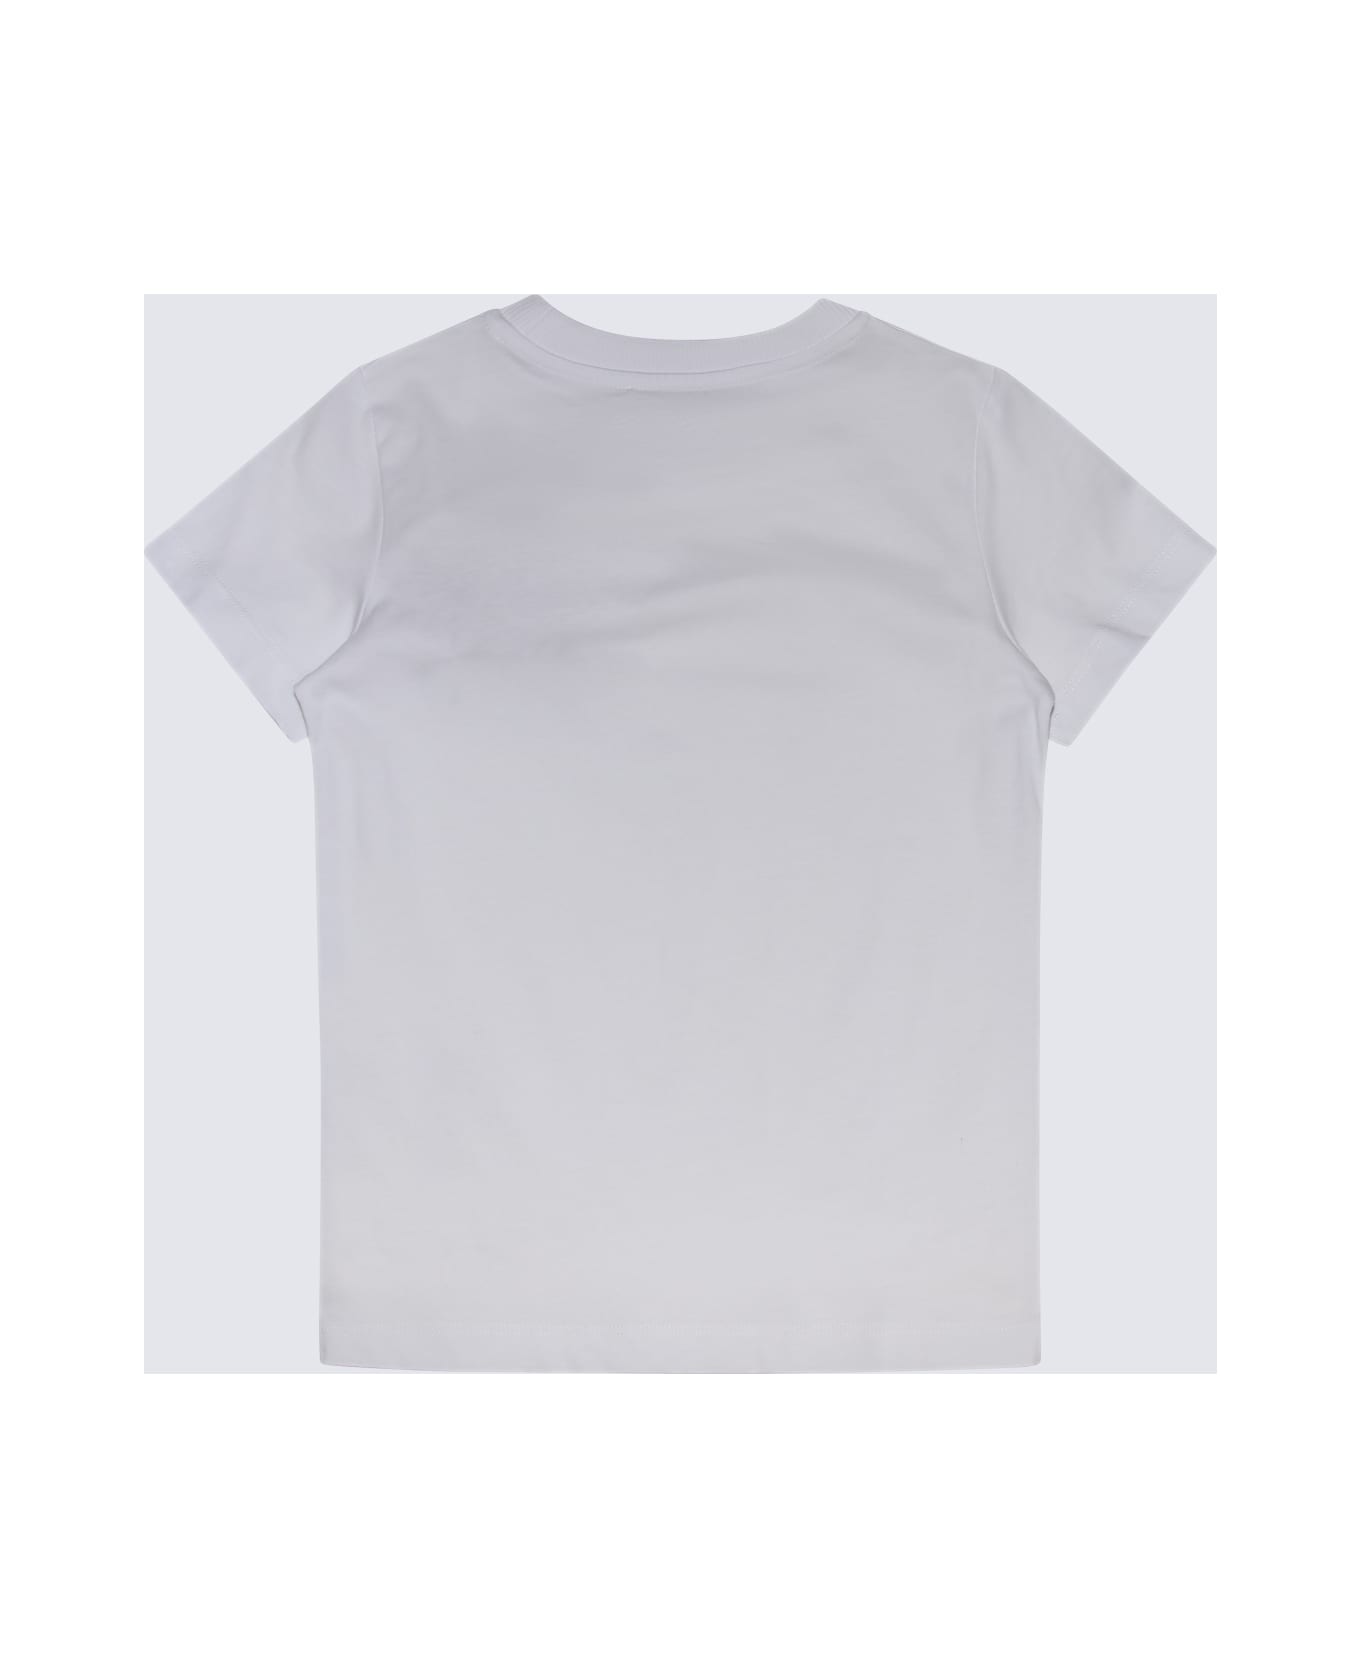 Moschino White Cotton T-shirt - White Tシャツ＆ポロシャツ